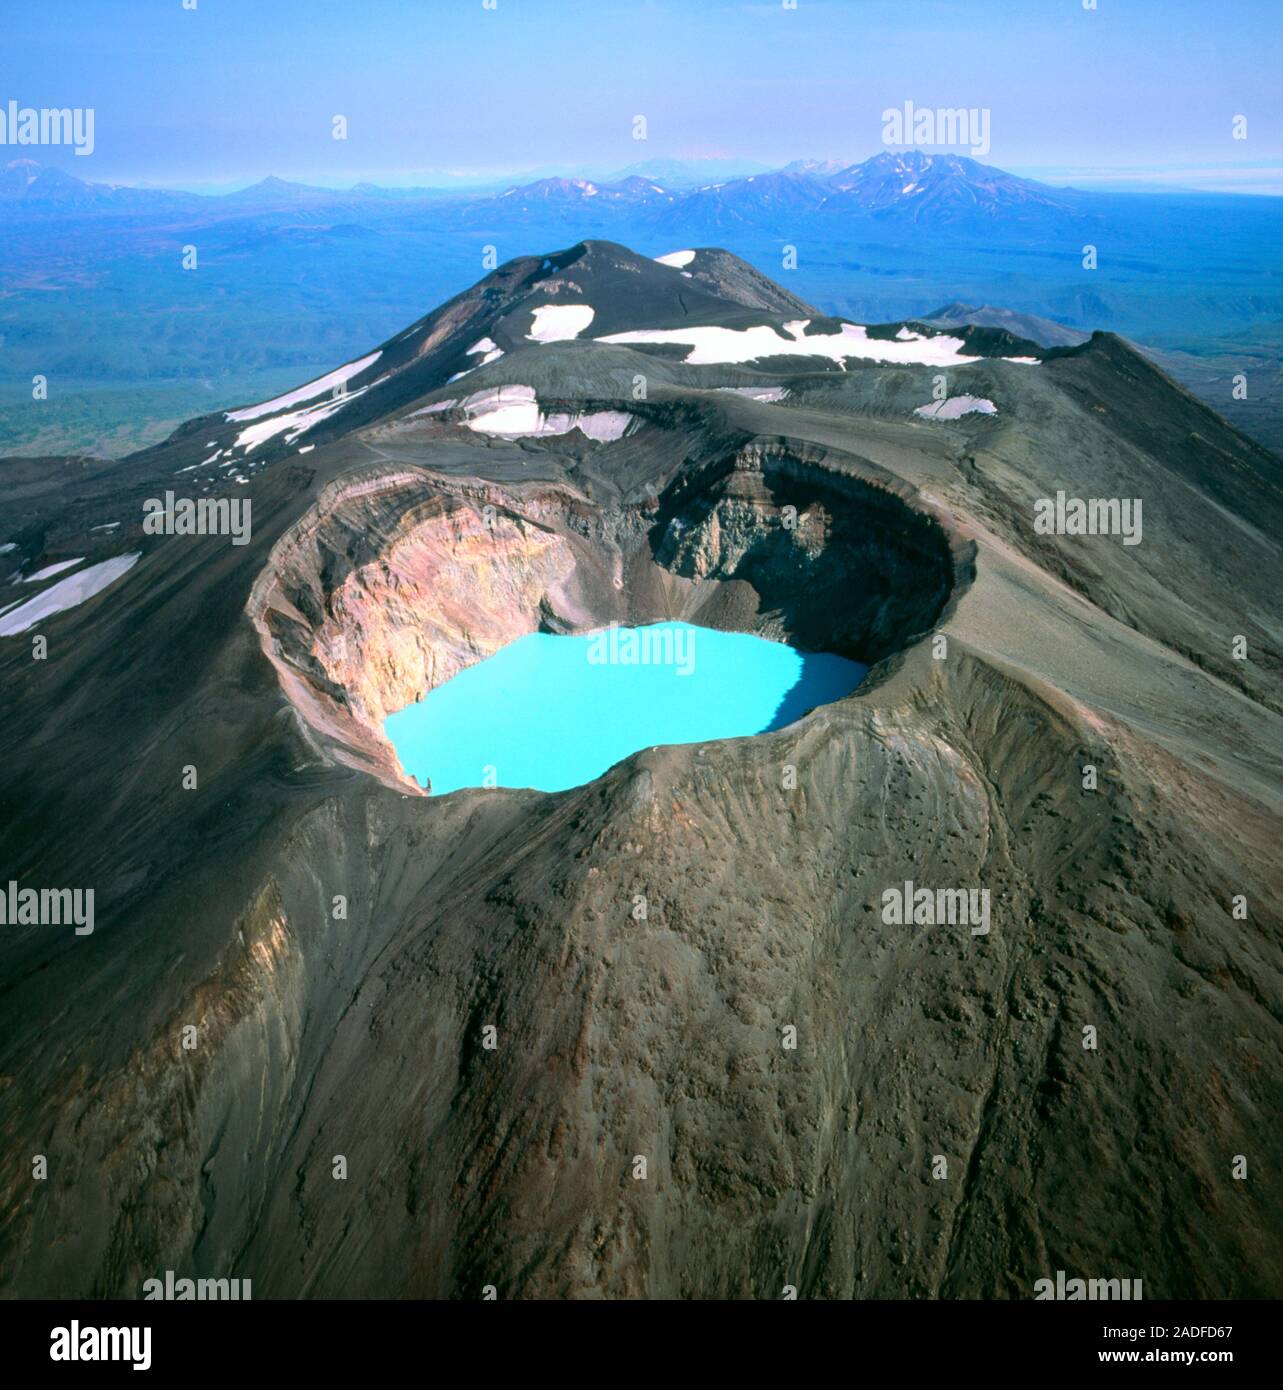 Le lac du cratère. Vue d'un lac de cratère bleu vif dans la caldeira de  Maly Semiachik, un volcan actif. Une caldeira est une dépression en forme  de bassin causée par v